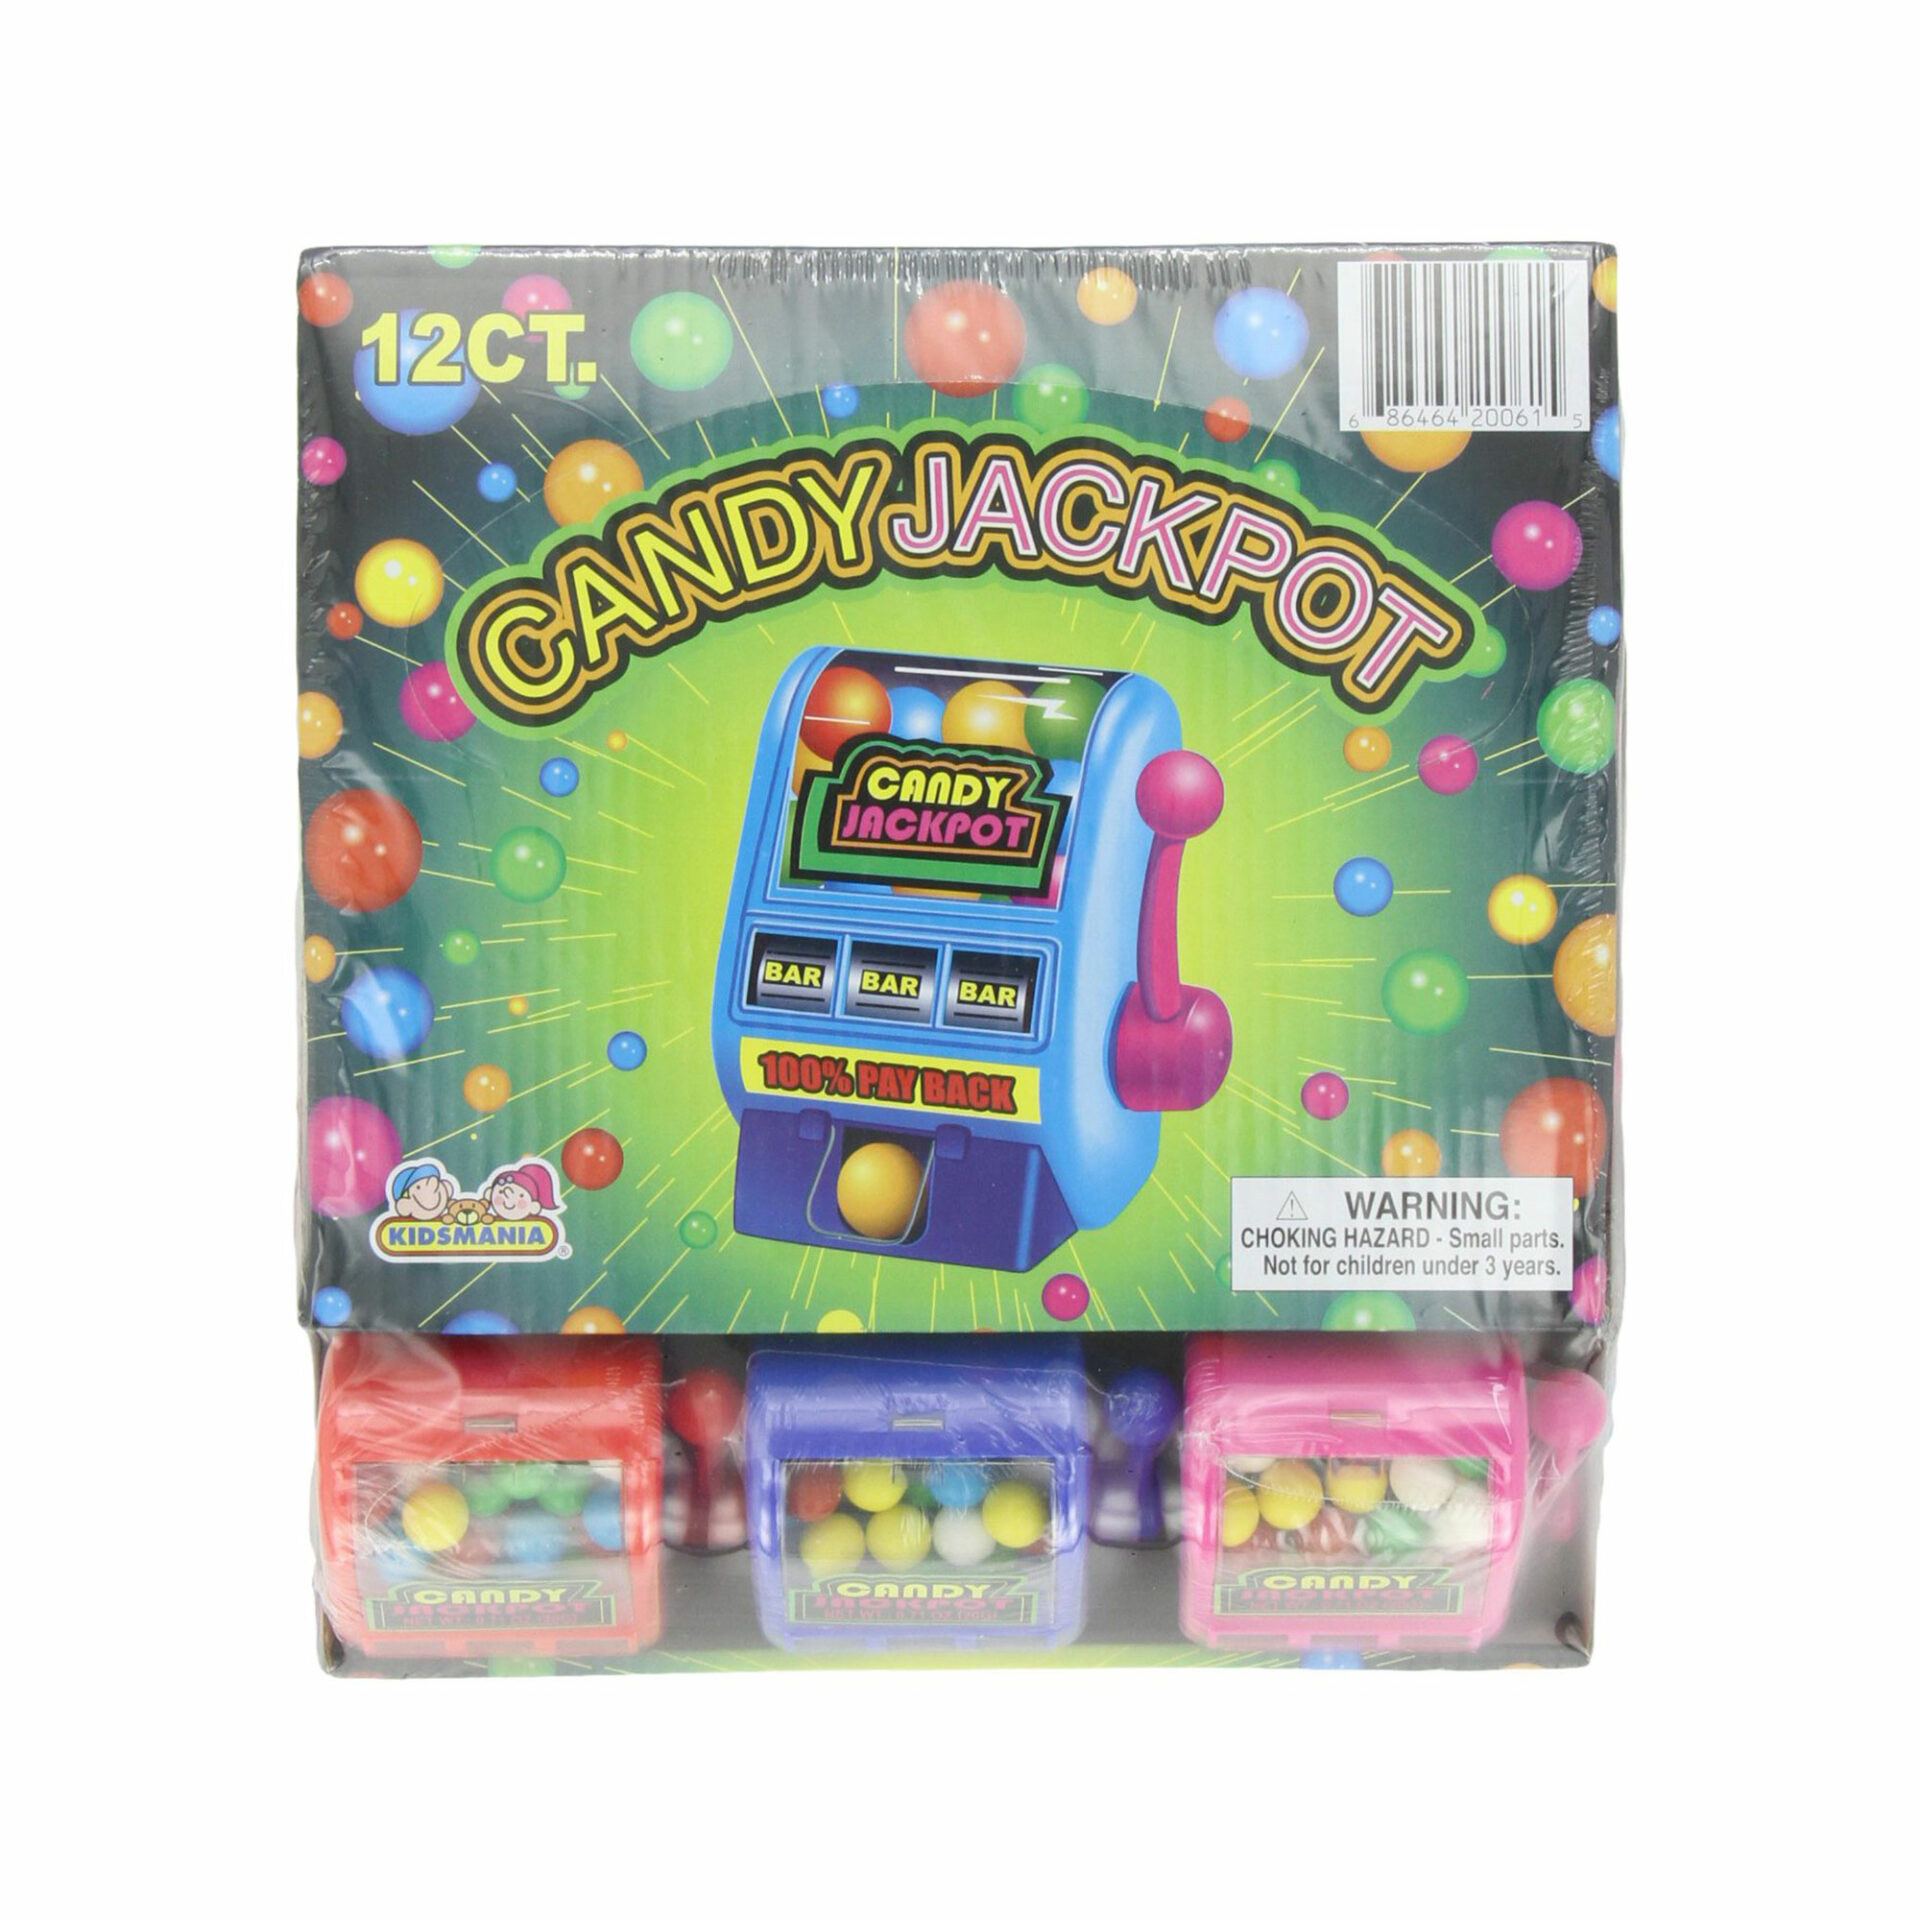 Jackpot Candy Machine, Machine à sous confiserie, bonbon ludique